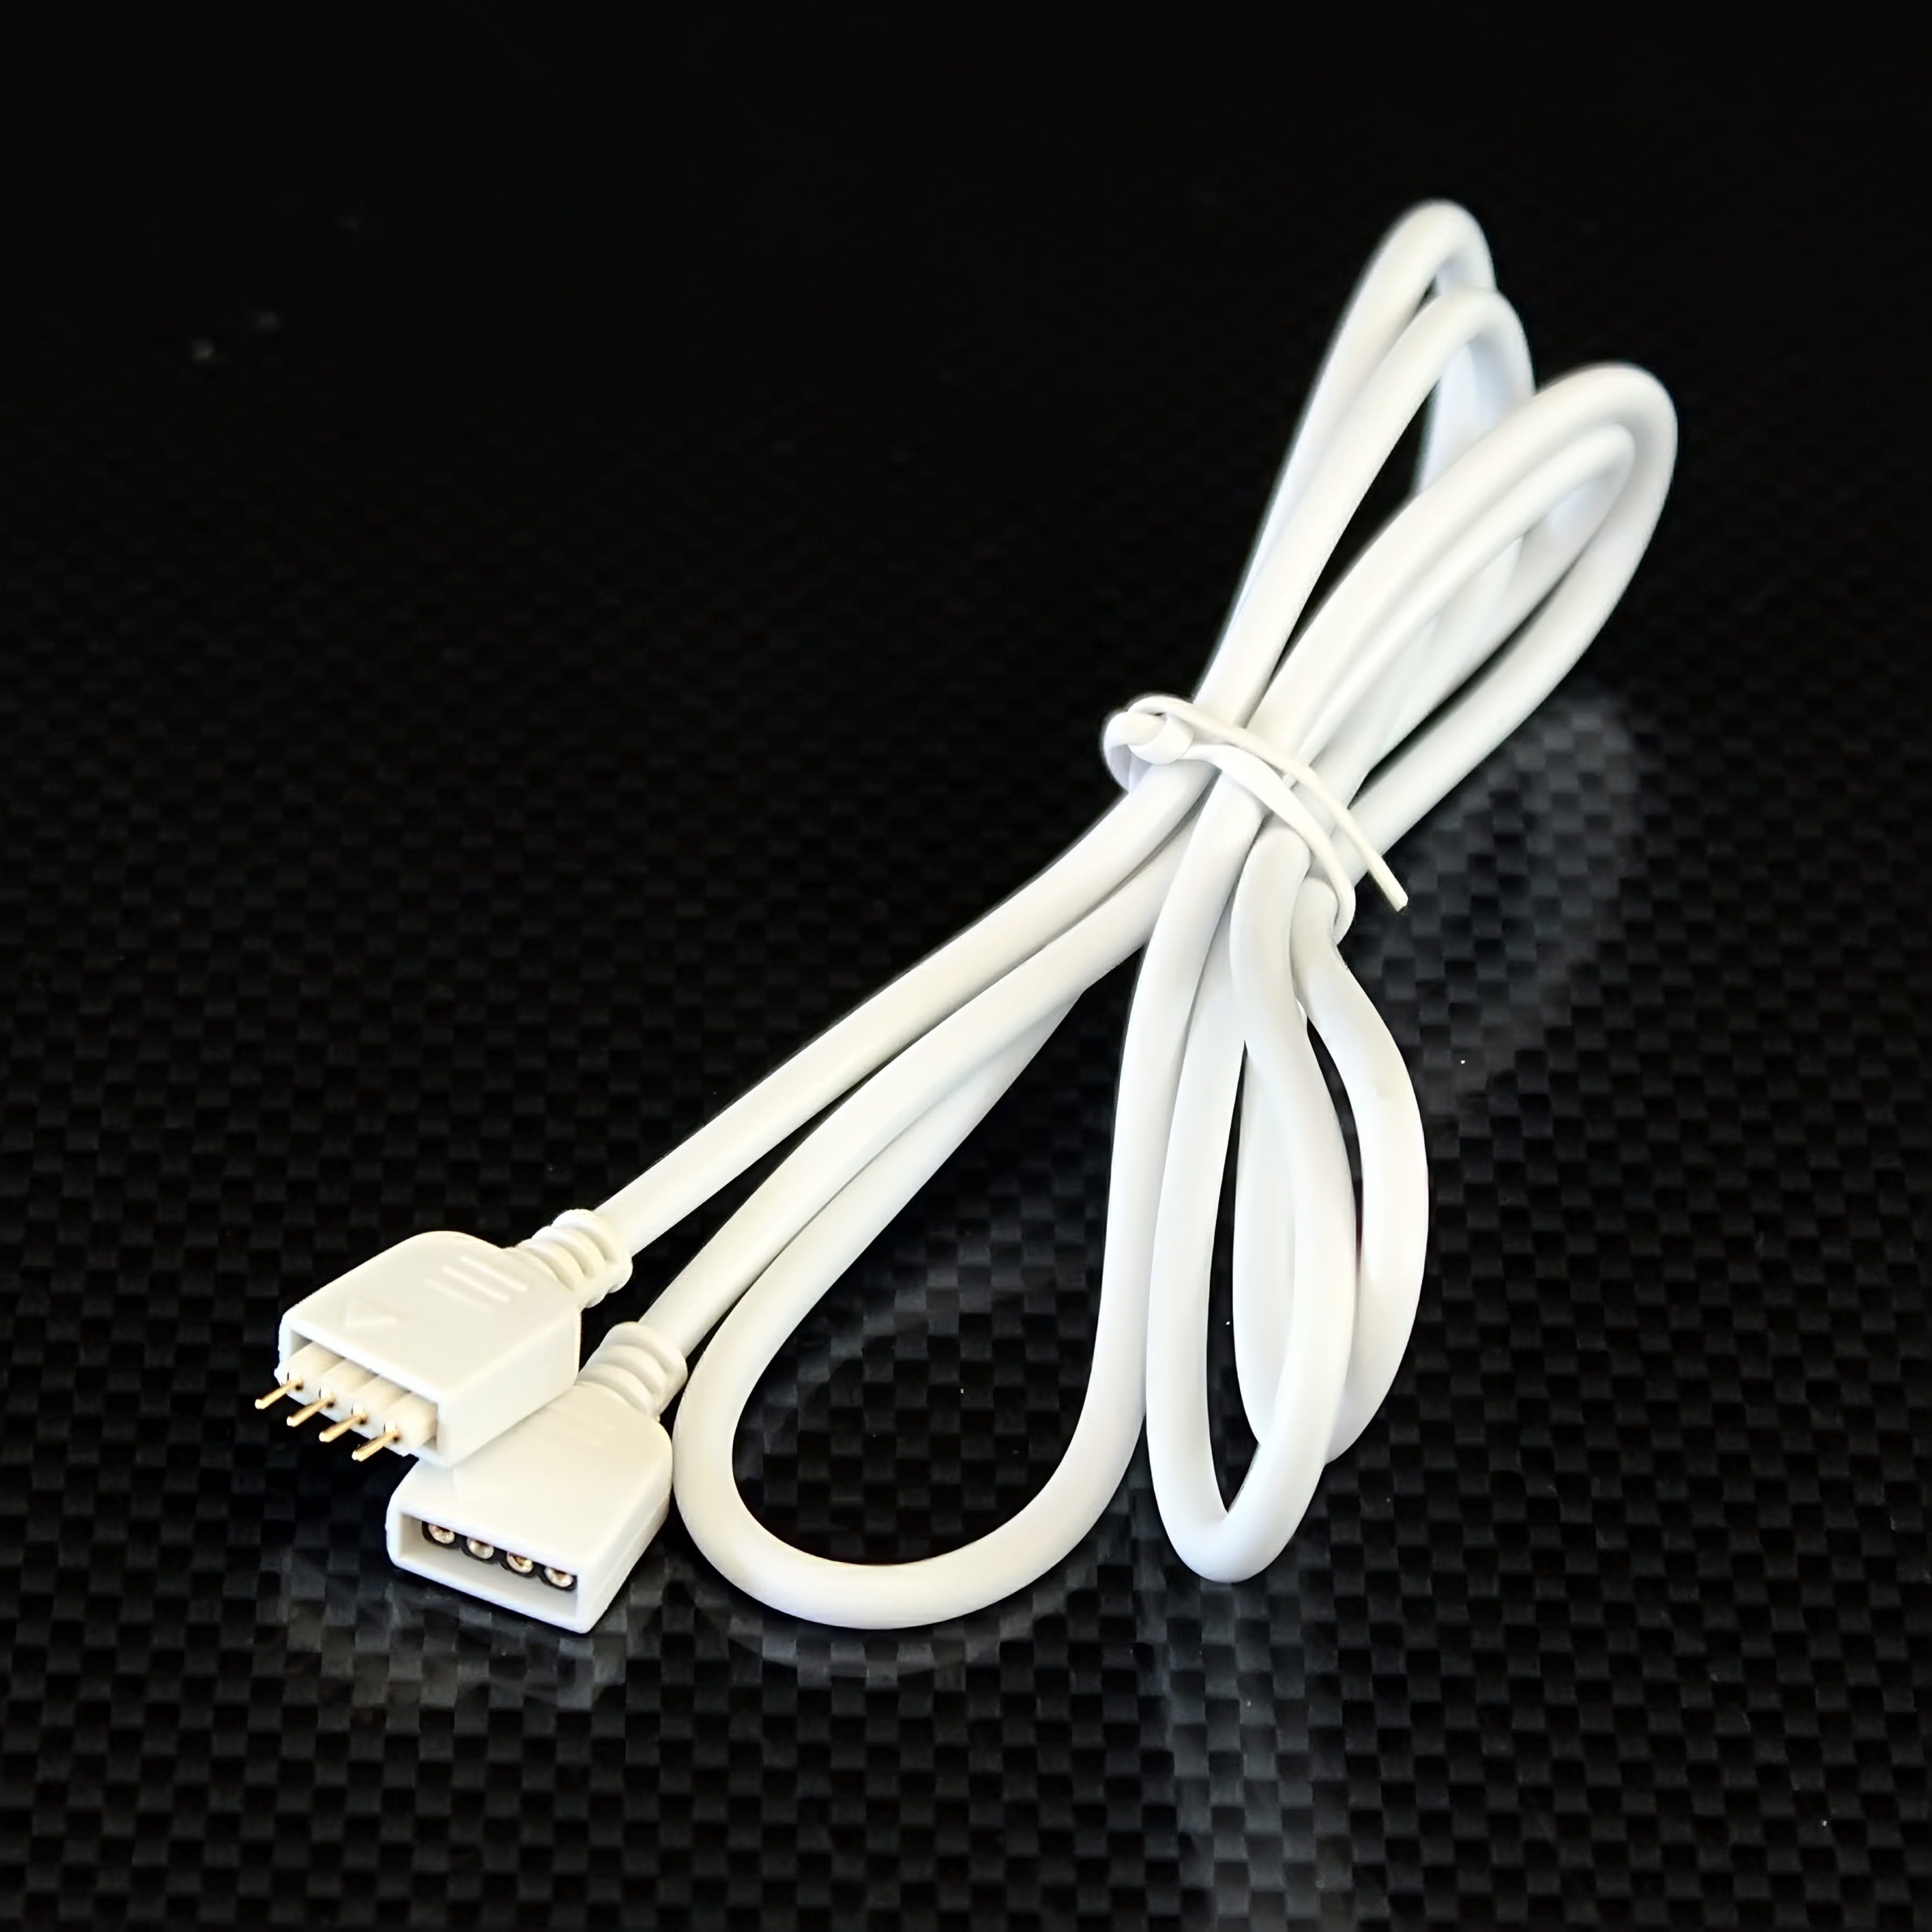 Ogeled Quick System 4polig 2.54 – Verbindungskabel 100cm Elektro-Kabel